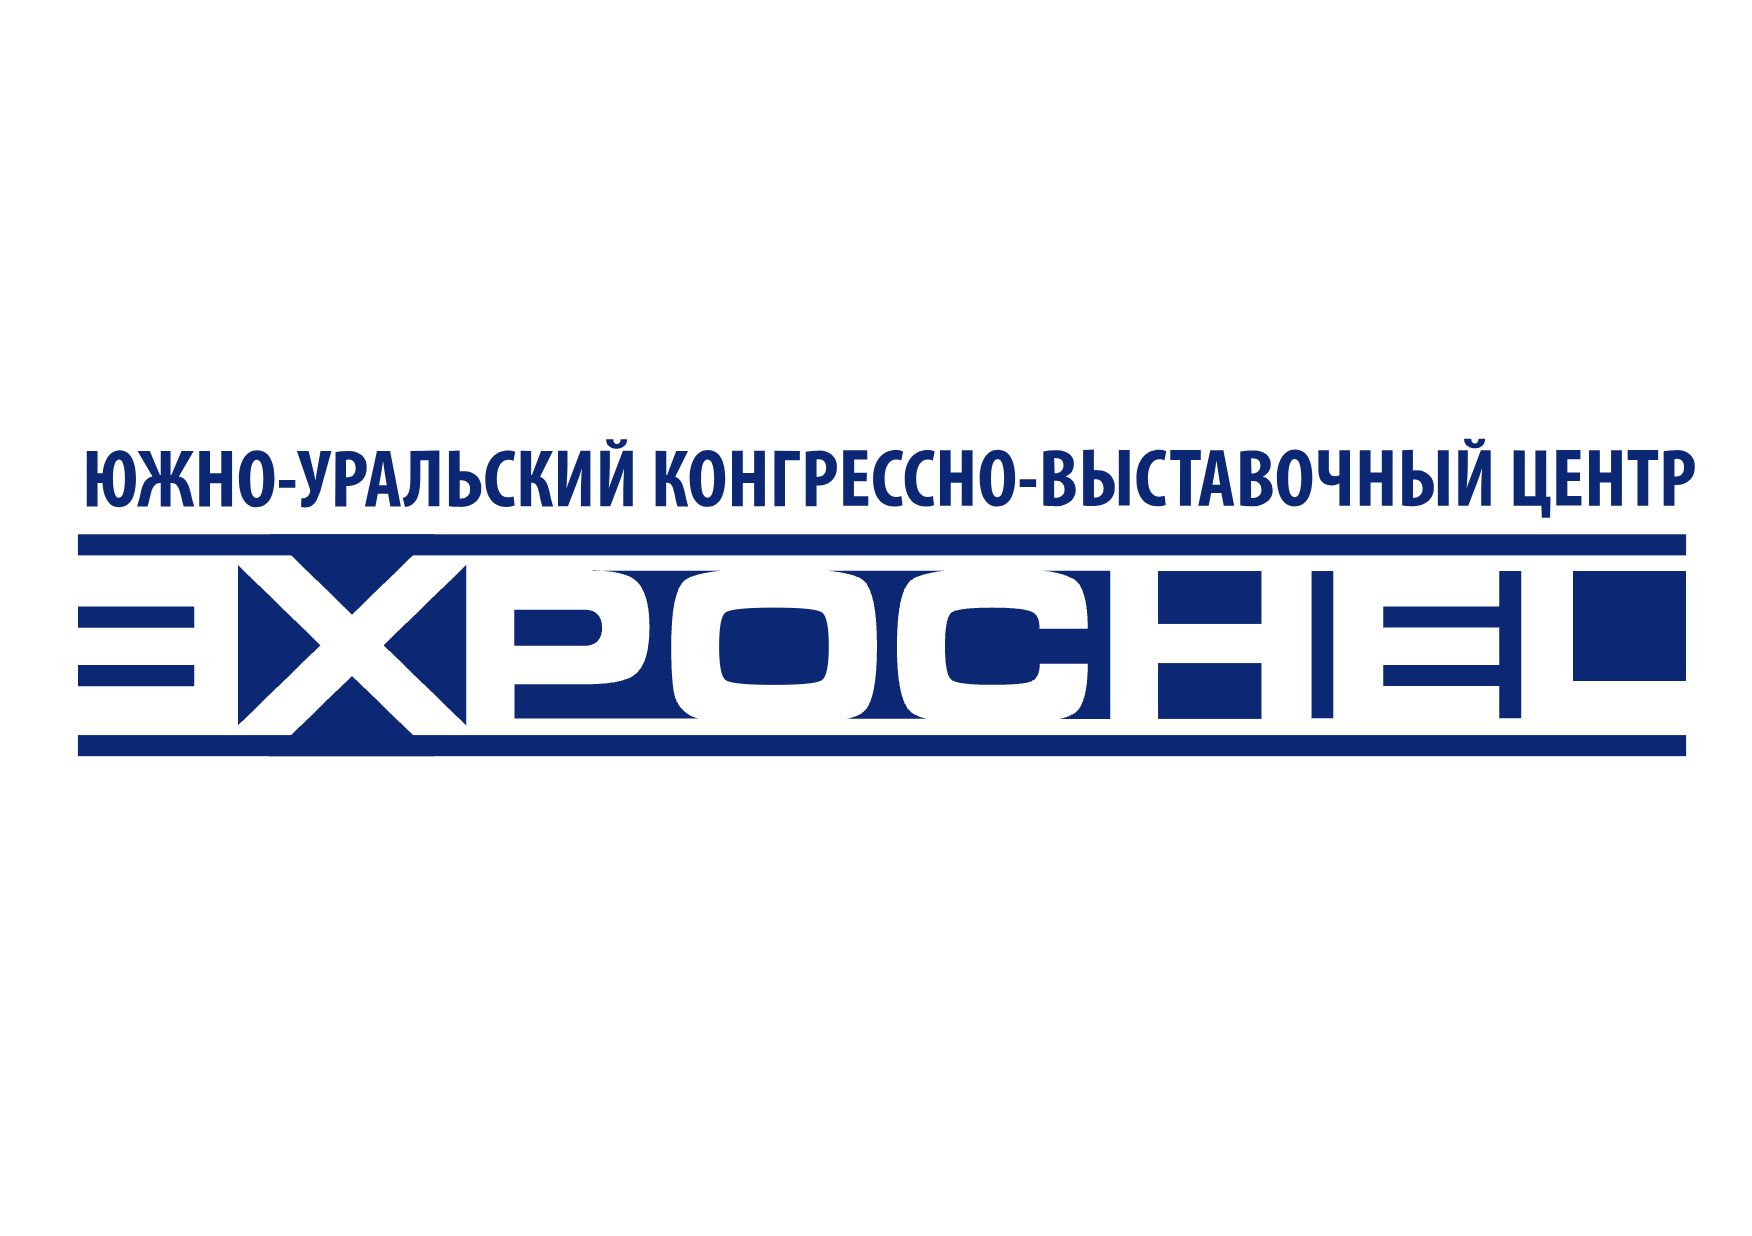 Южно-Уральский конгрессно-выставочный центр «Экспочел»